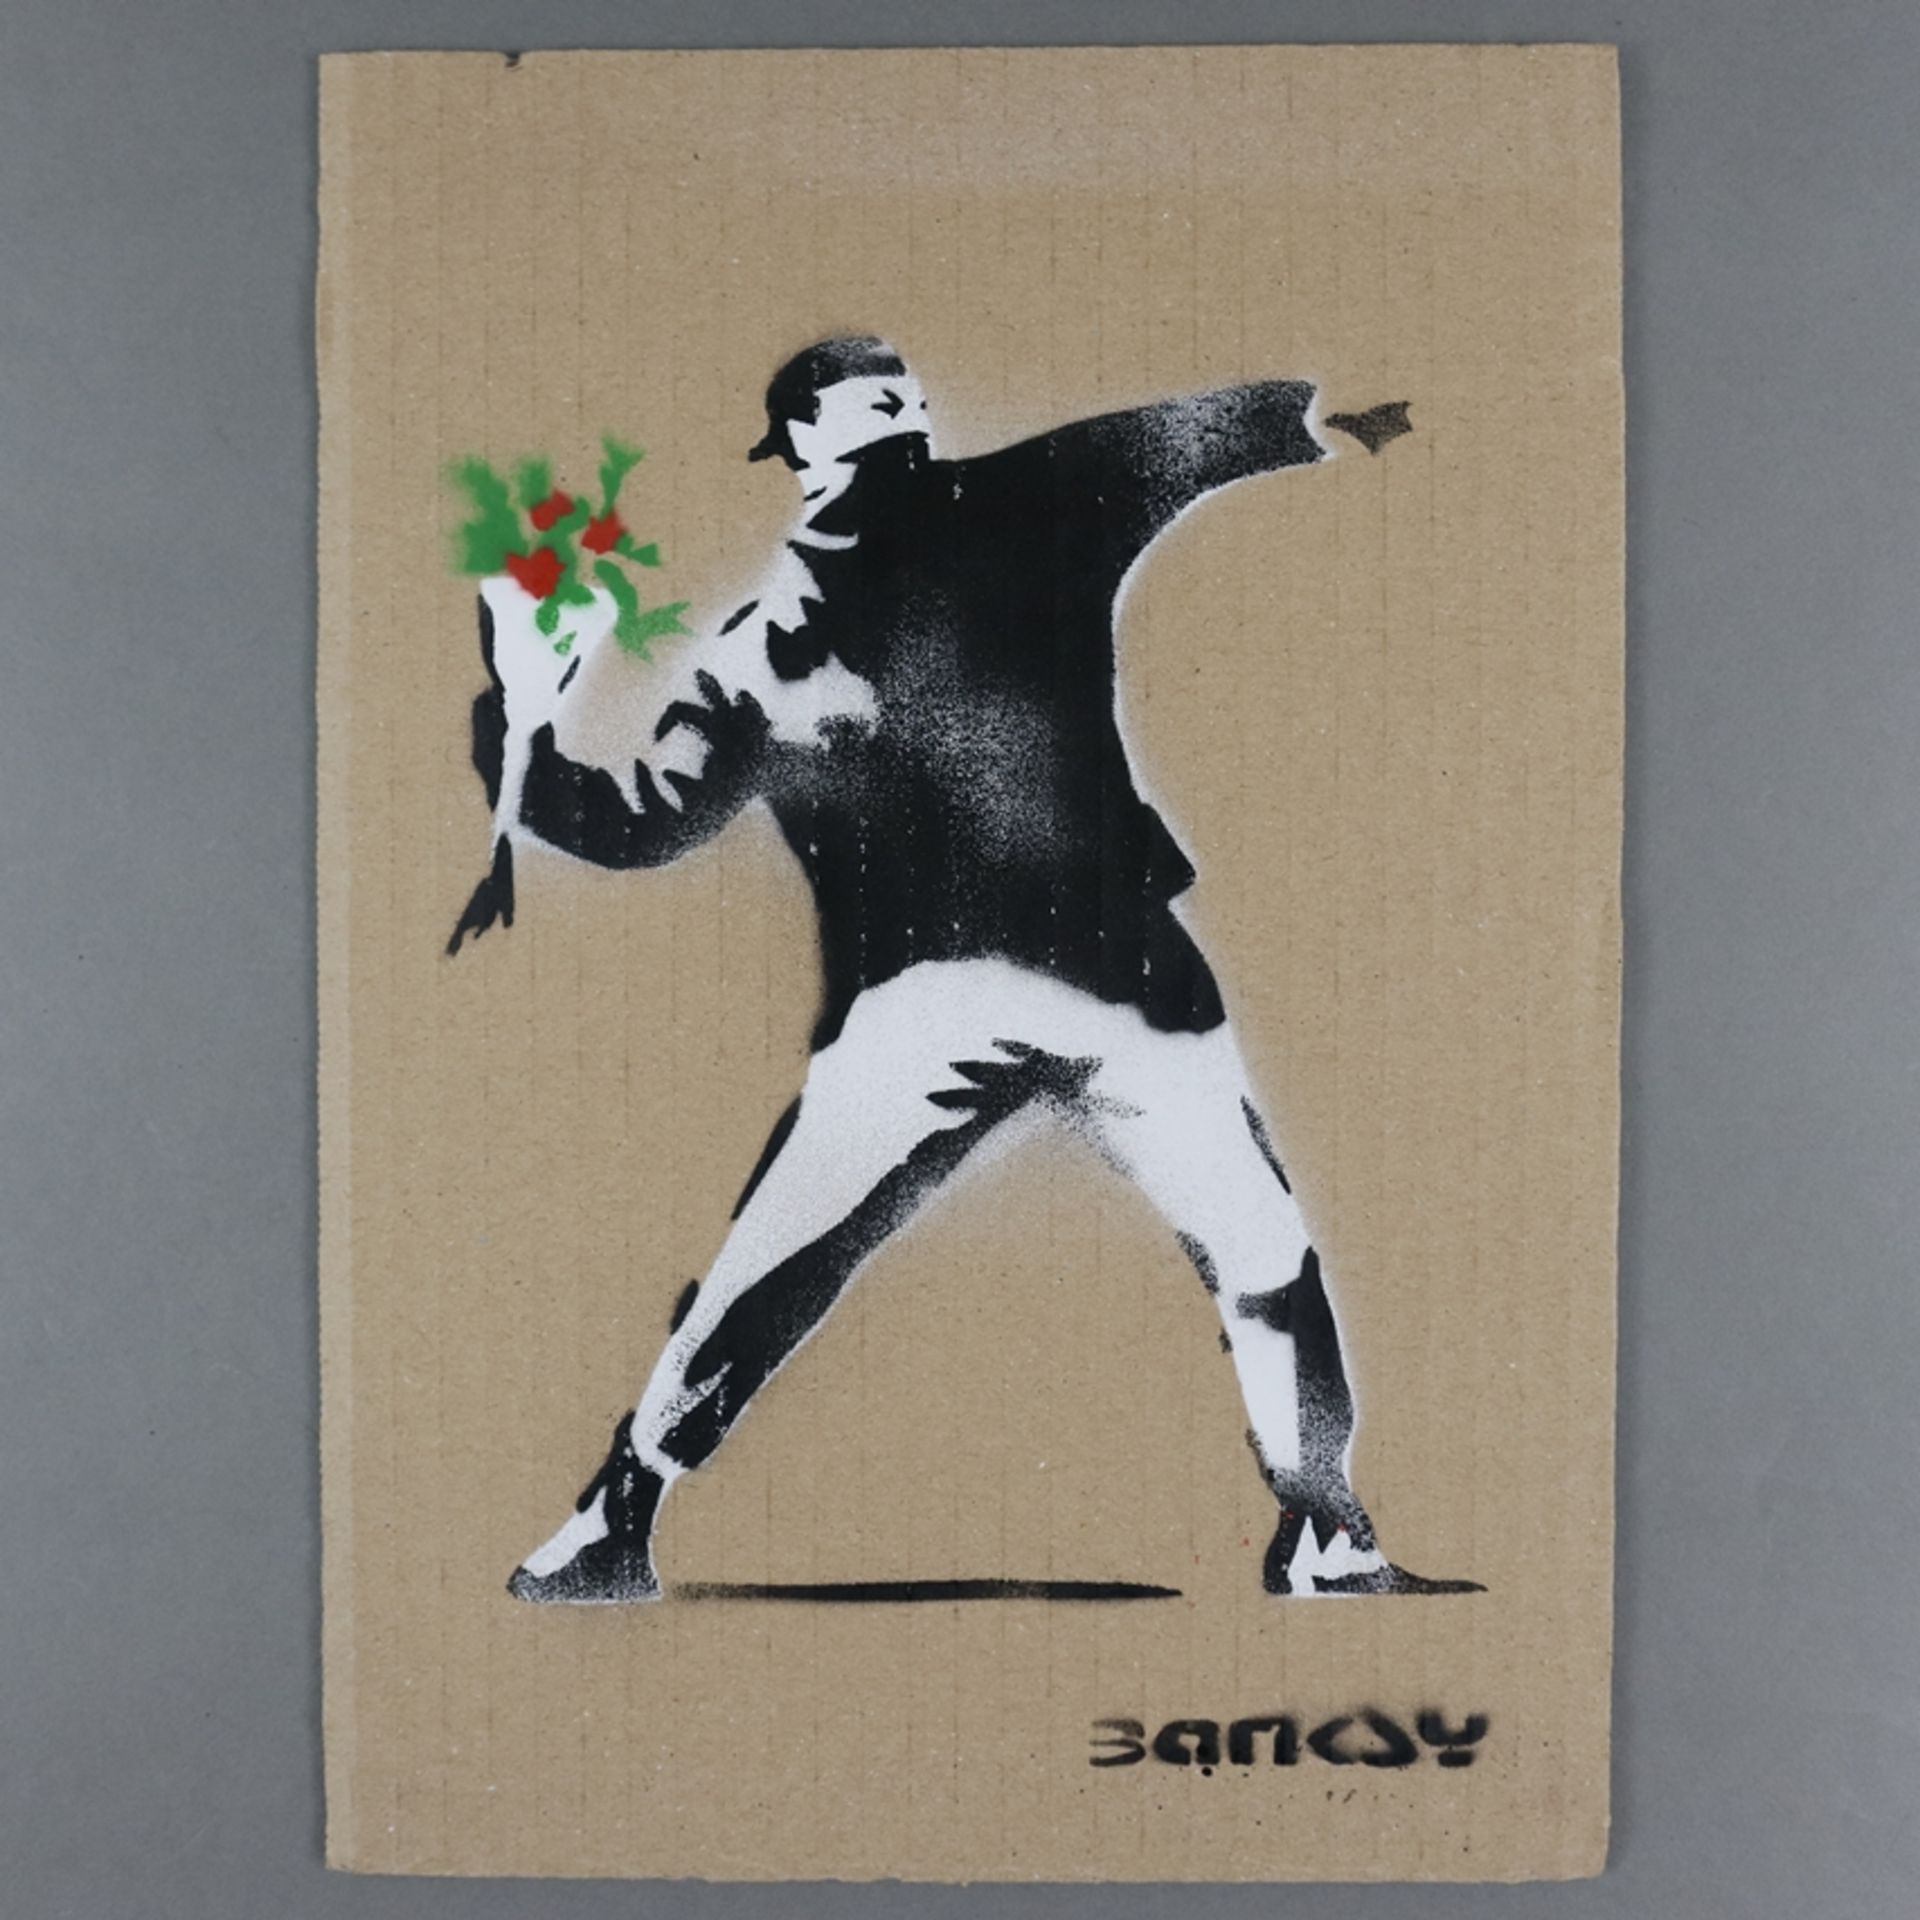 Banksy - "Blumenwerfer", 2015, Souvenir aus der Ausstellung "Dismaland" in Weston-super-Mare in Som - Image 4 of 6